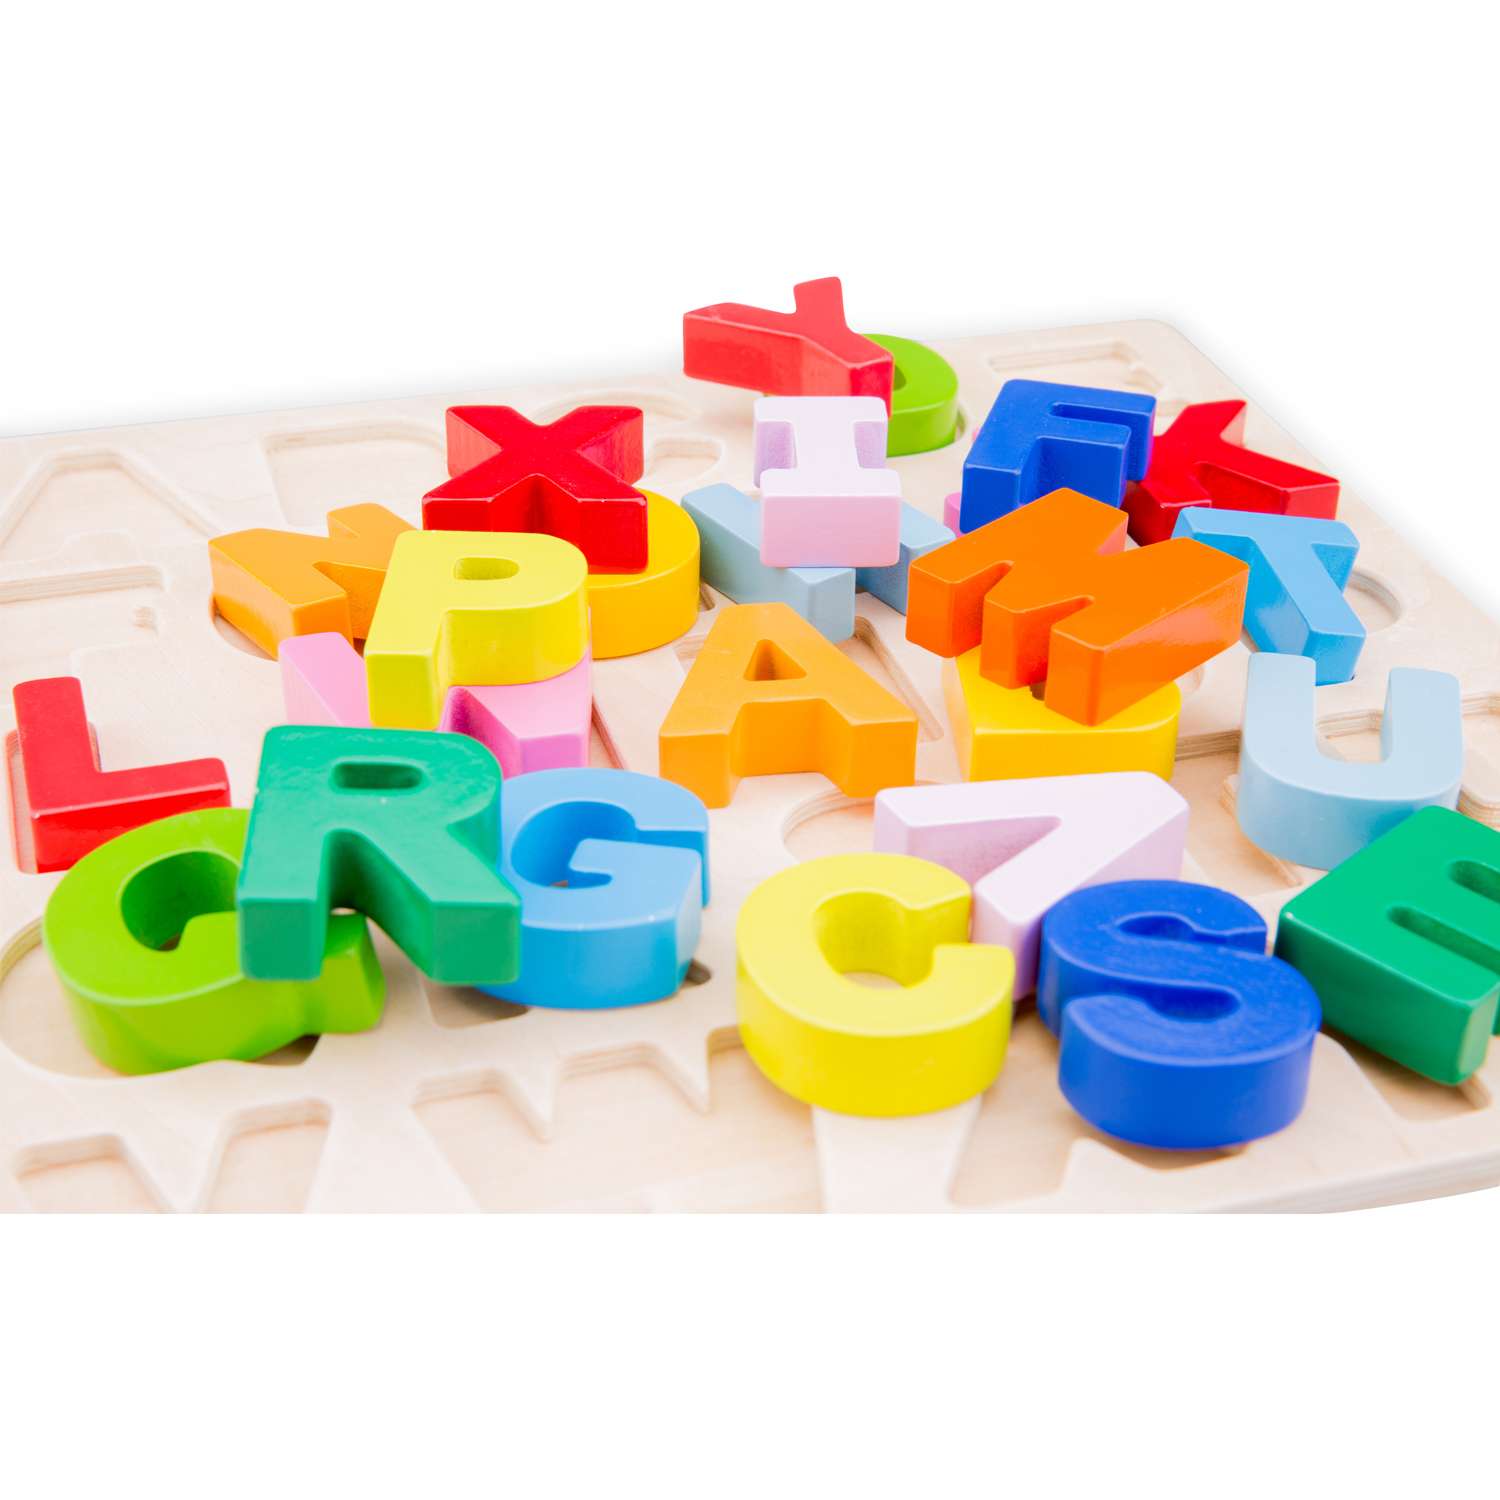 Игровой набор New Classic Toys Сортер английский алфавит 10534 - фото 4